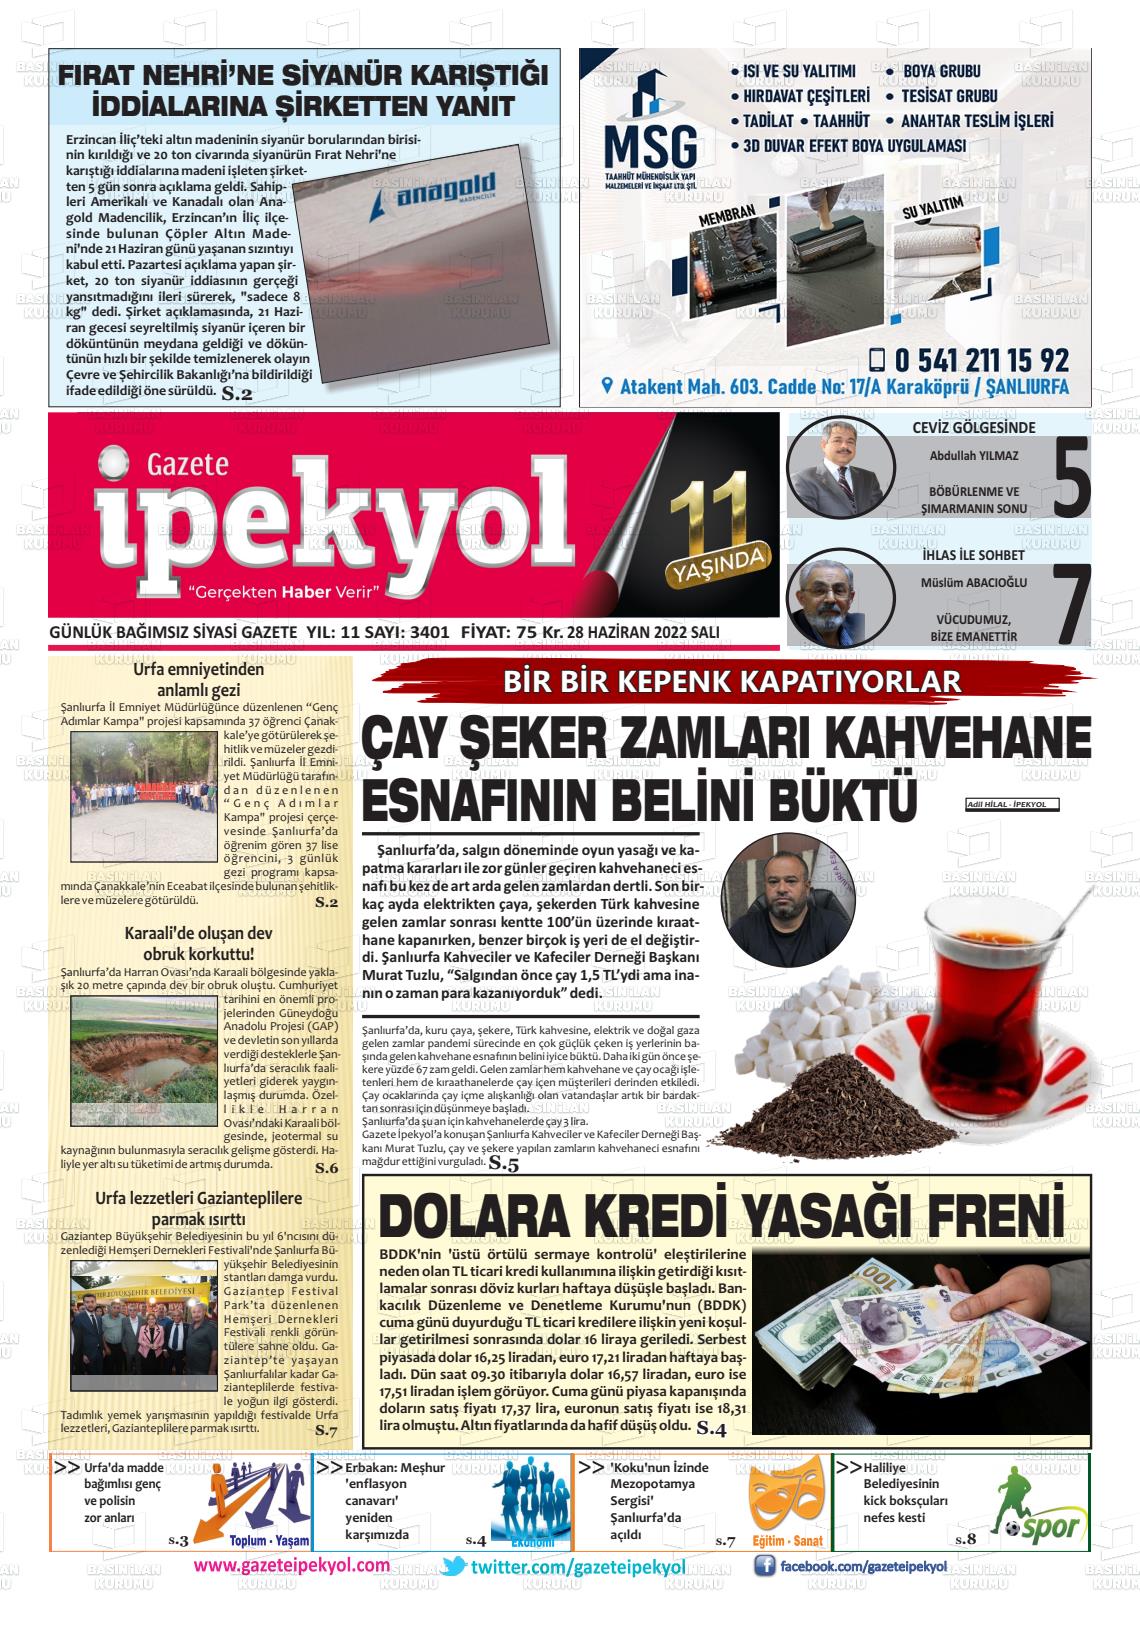 28 Haziran 2022 Gazete İpekyol Gazete Manşeti